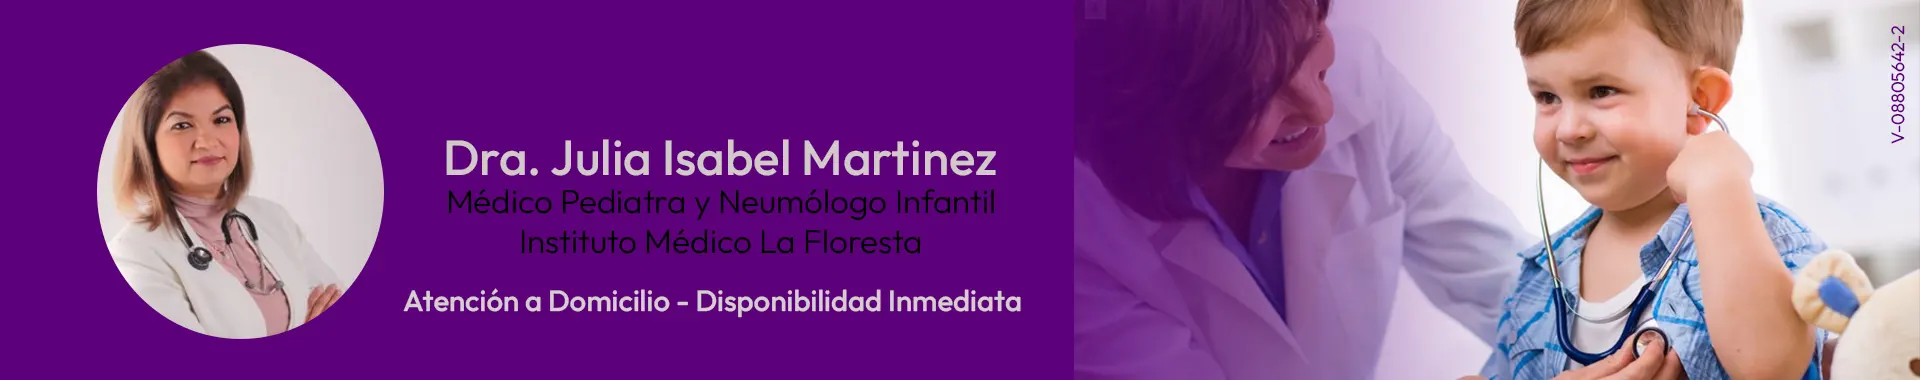 Imagen 1 del perfil de Dra. Julia Isabel Martínez